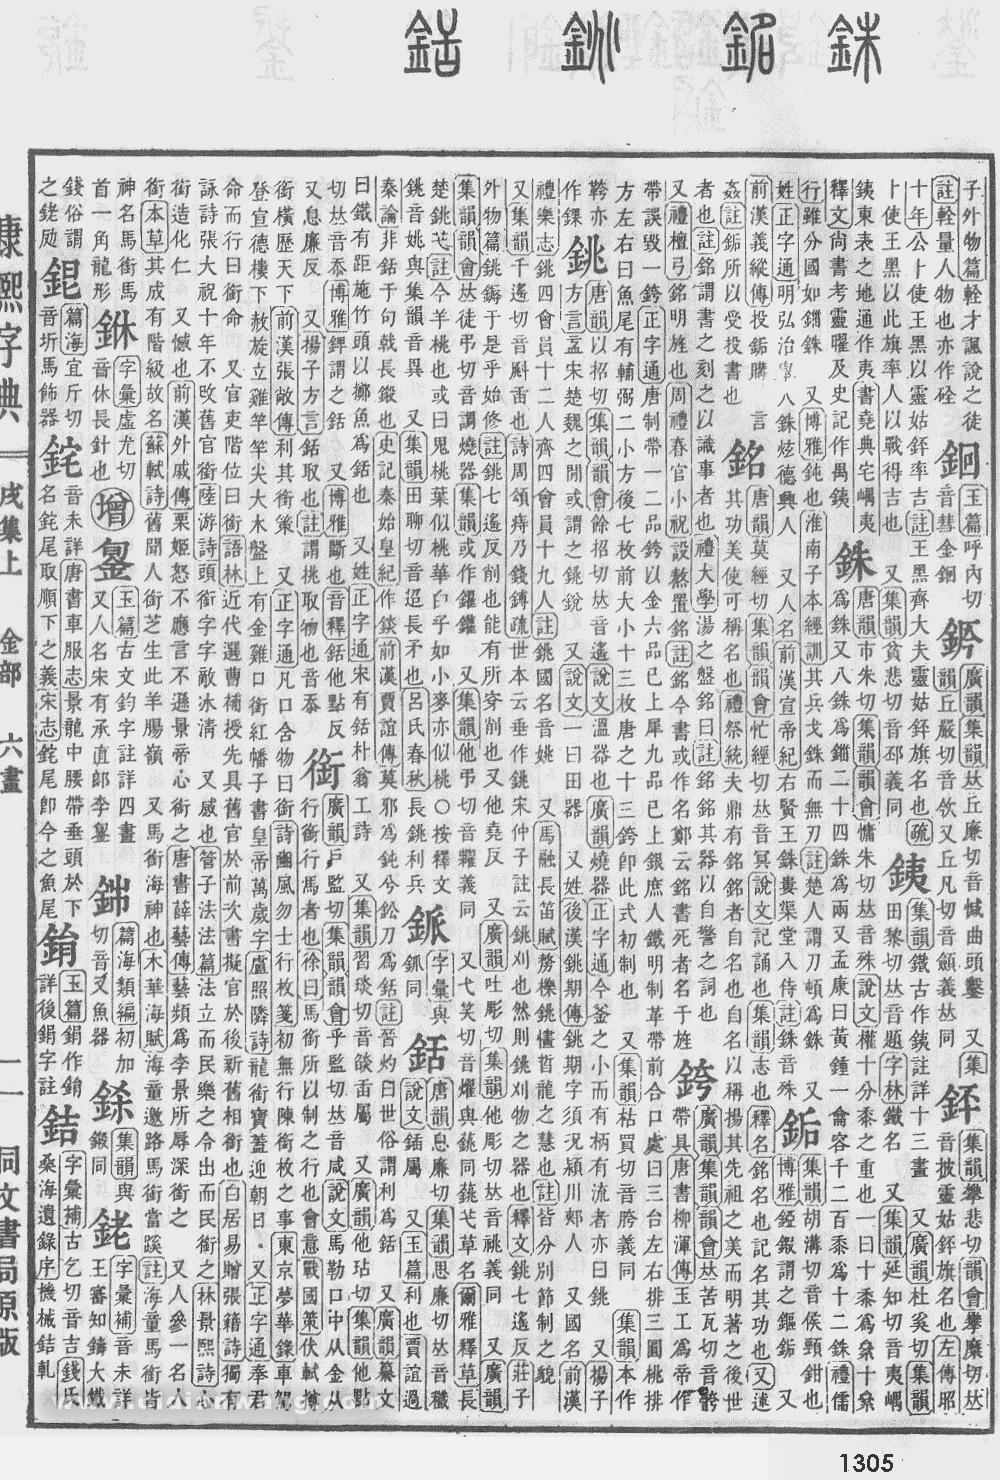 康熙字典掃描版第1305頁